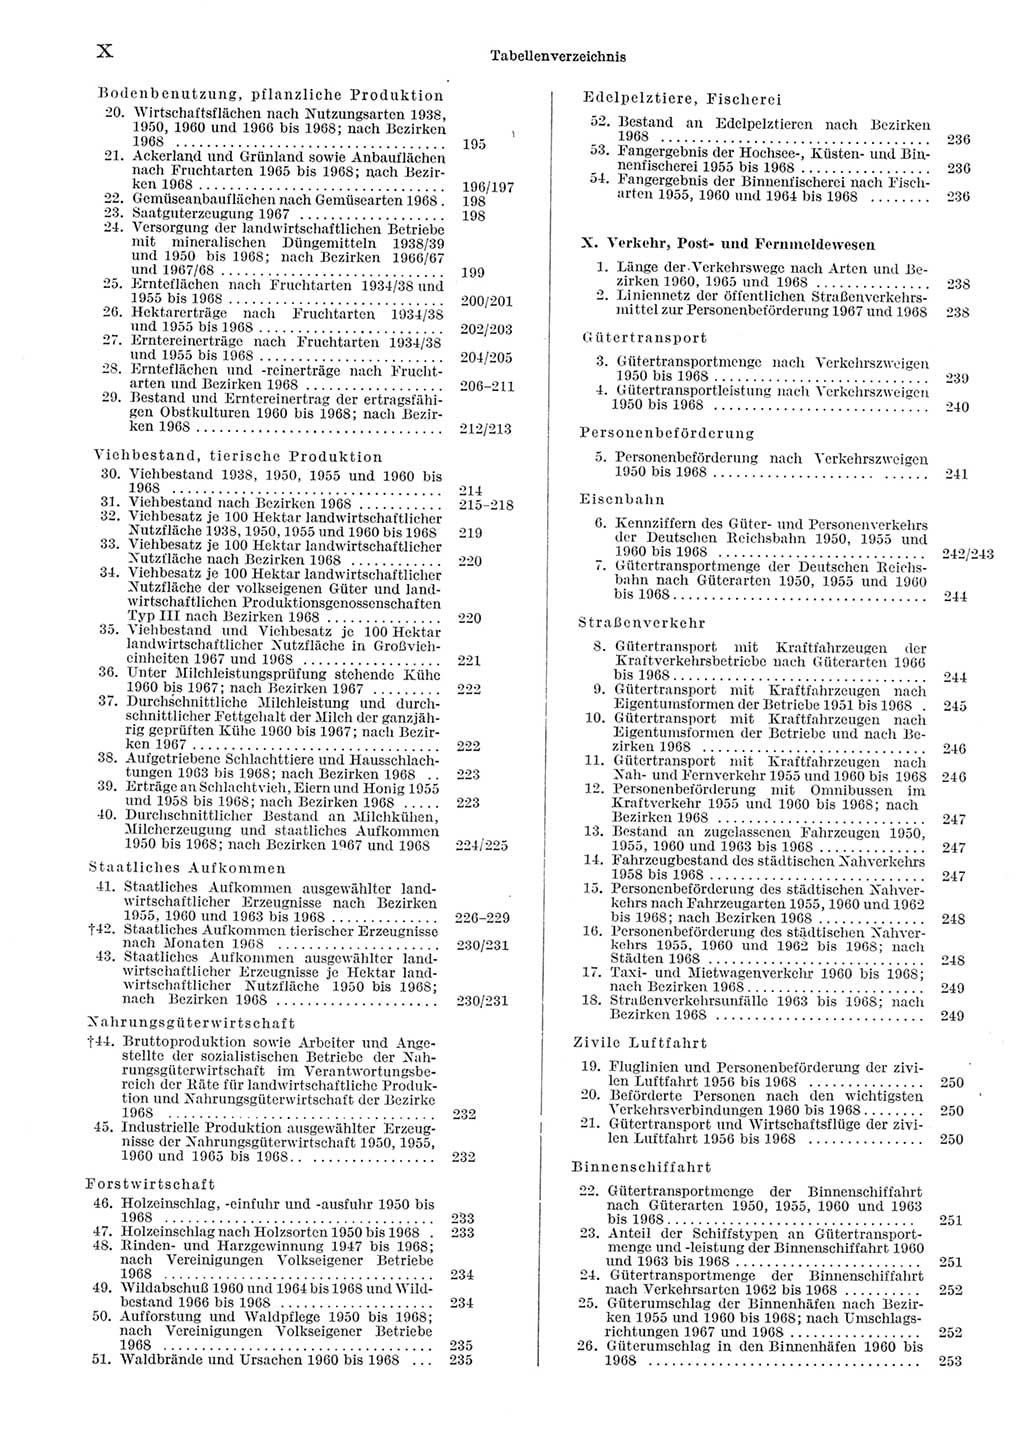 Statistisches Jahrbuch der Deutschen Demokratischen Republik (DDR) 1969, Seite 10 (Stat. Jb. DDR 1969, S. 10)